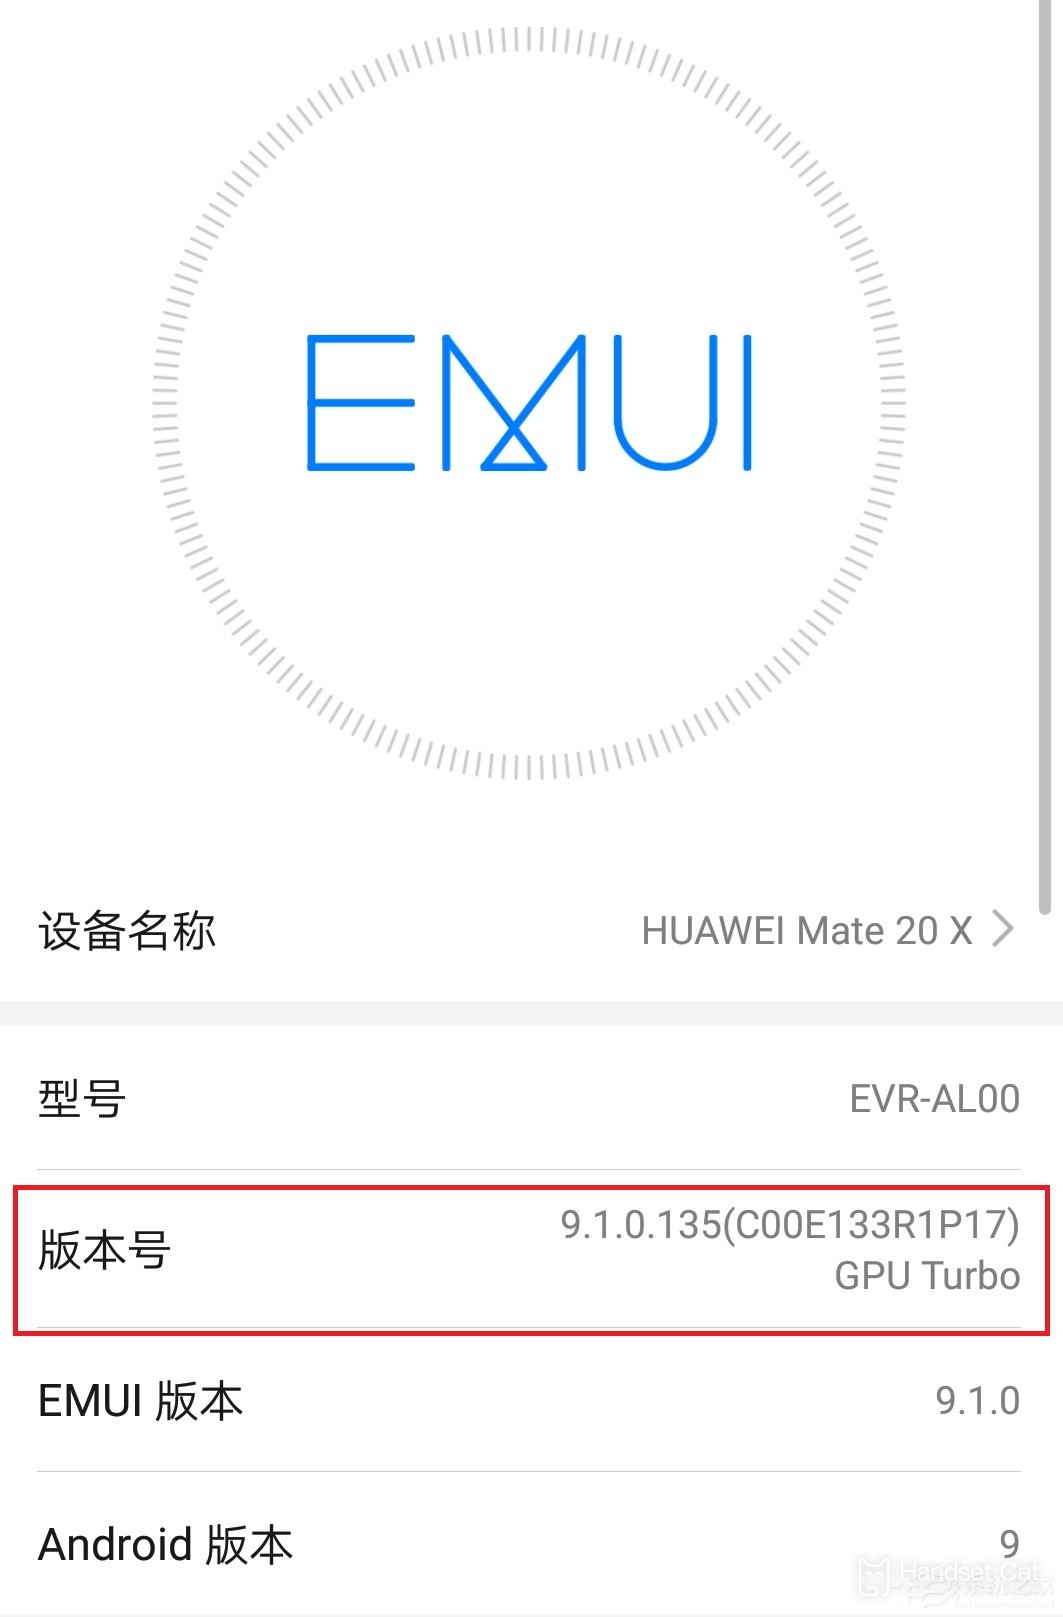 Tutorial sobre cómo entrar en modo desarrollador en Huawei Enjoy 50 Pro